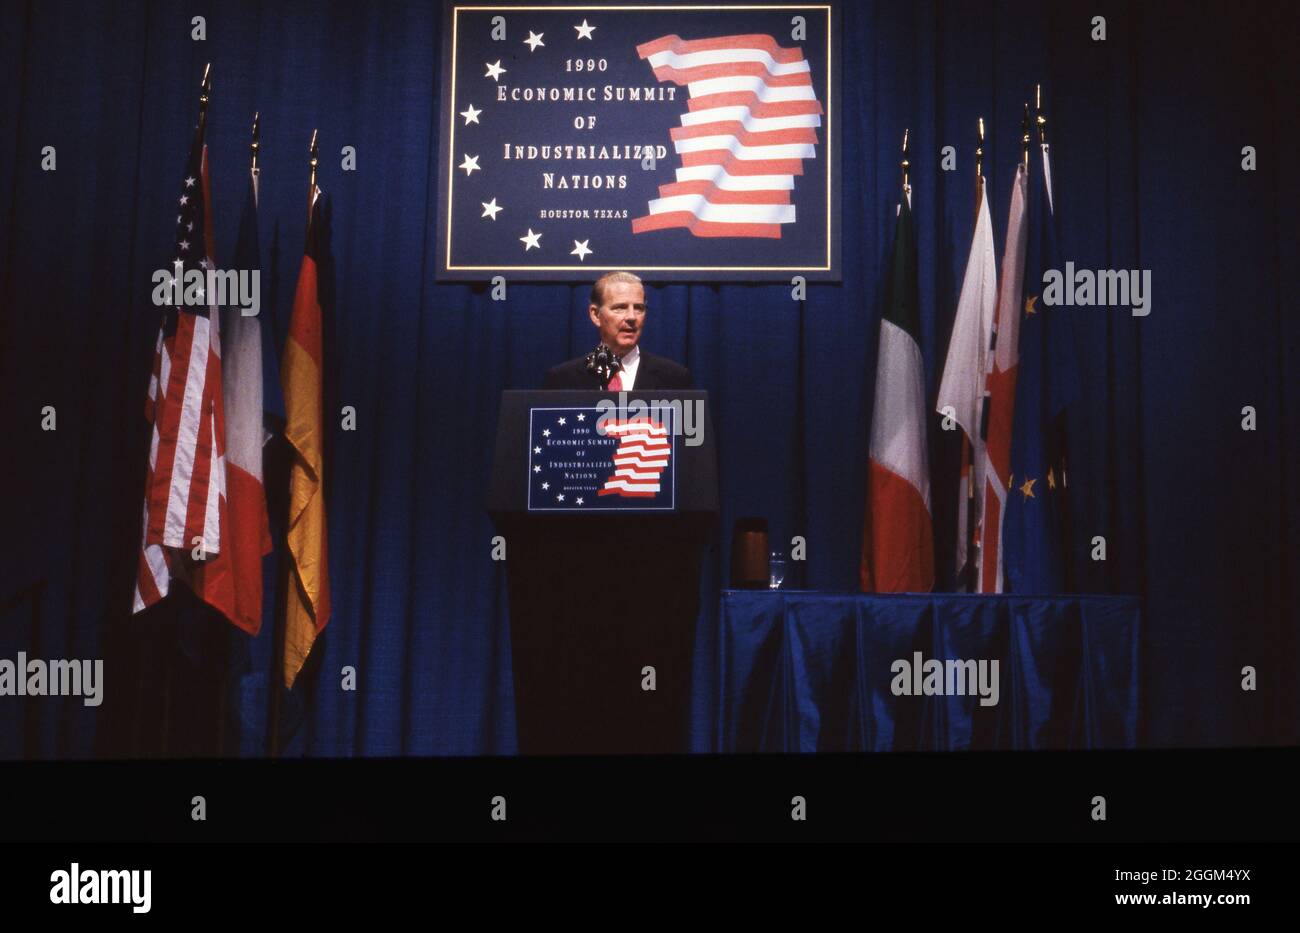 Houston Texas USA, luglio 1990: Il Segretario di Stato degli Stati Uniti James Baker parla ai leader mondiali al Summit economico delle Nazioni industrializzate di Houston. Il presidente George H. W. Bush ha ospitato l'evento, chiamato anche G7 Economic Summit. ©Bob Daemmrich Foto Stock